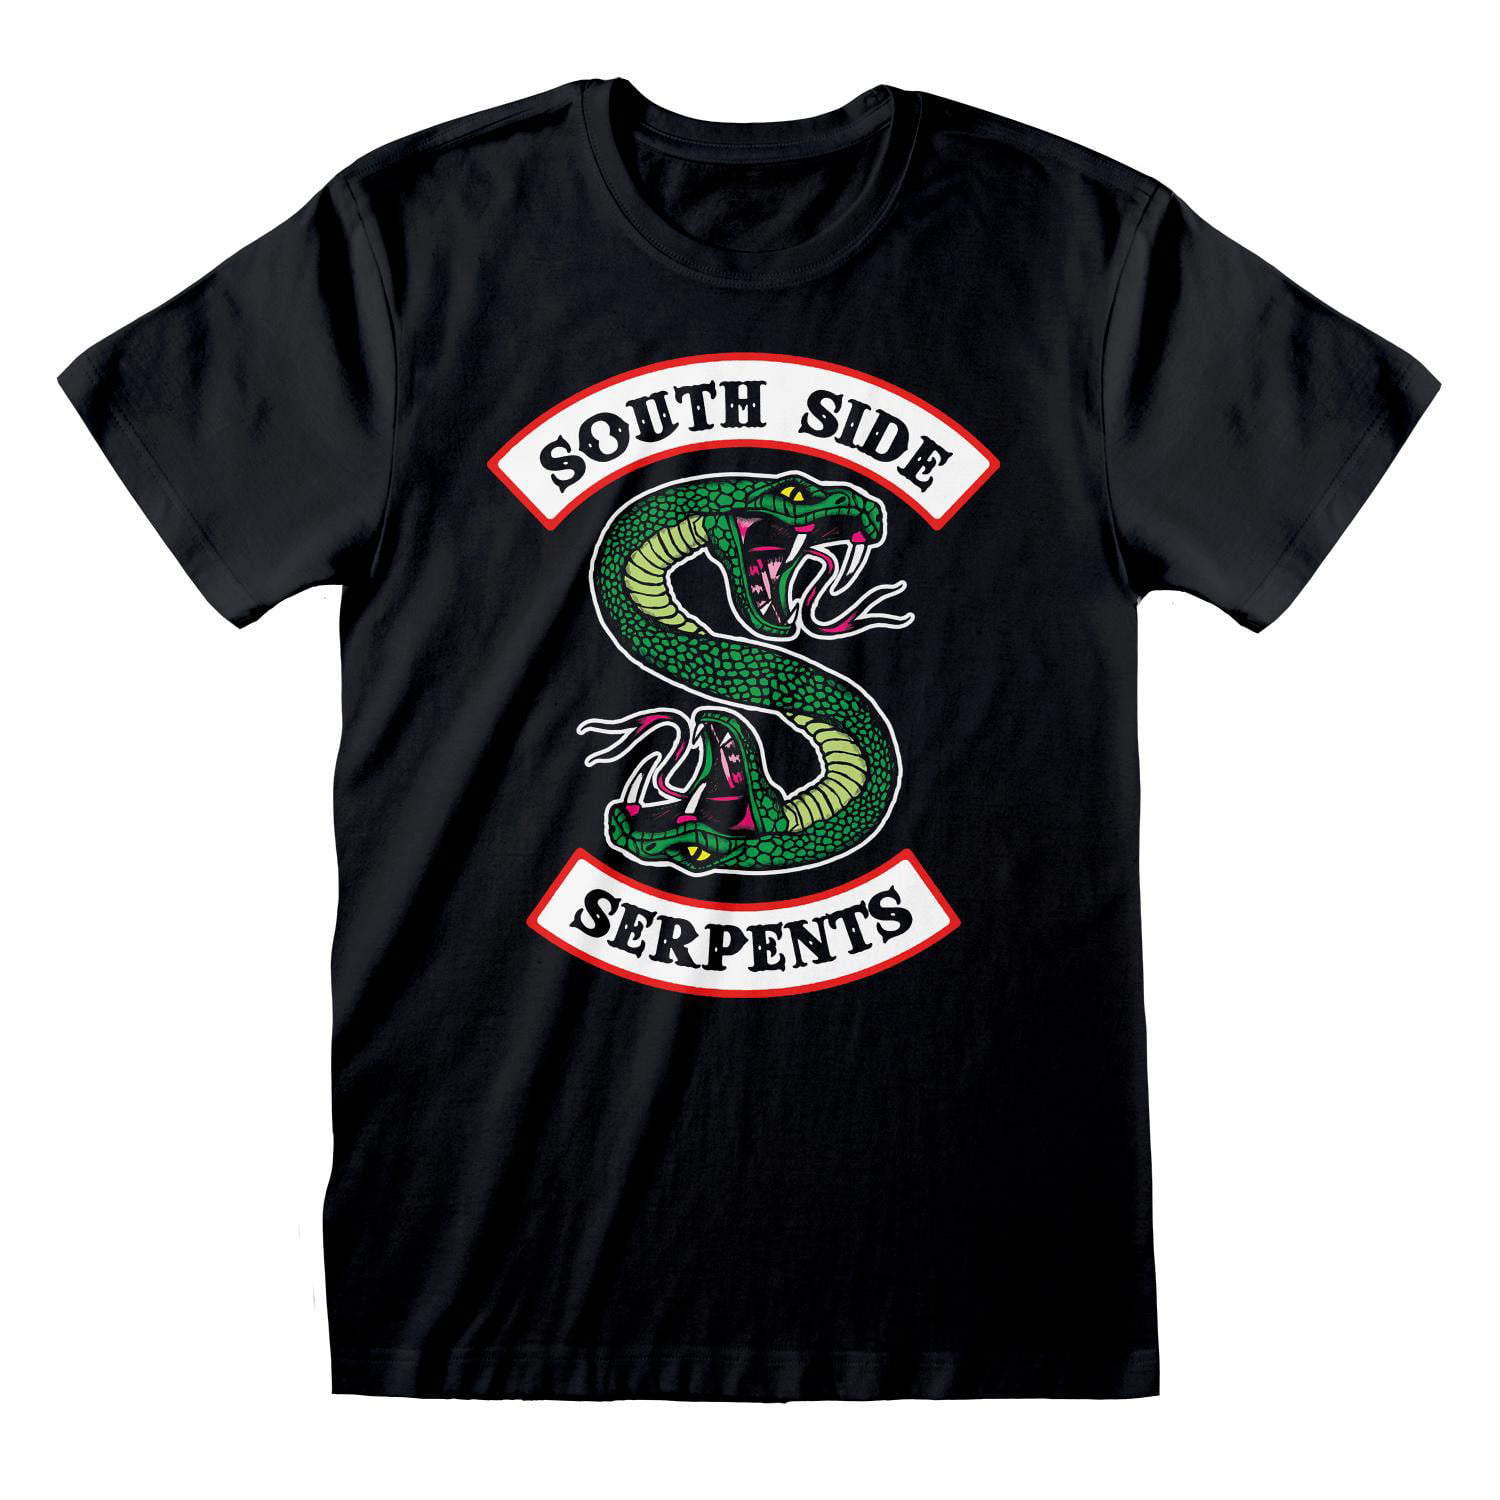 Riverdale South Side Serpents Original Art T-Shirt Mens Womens Tee 